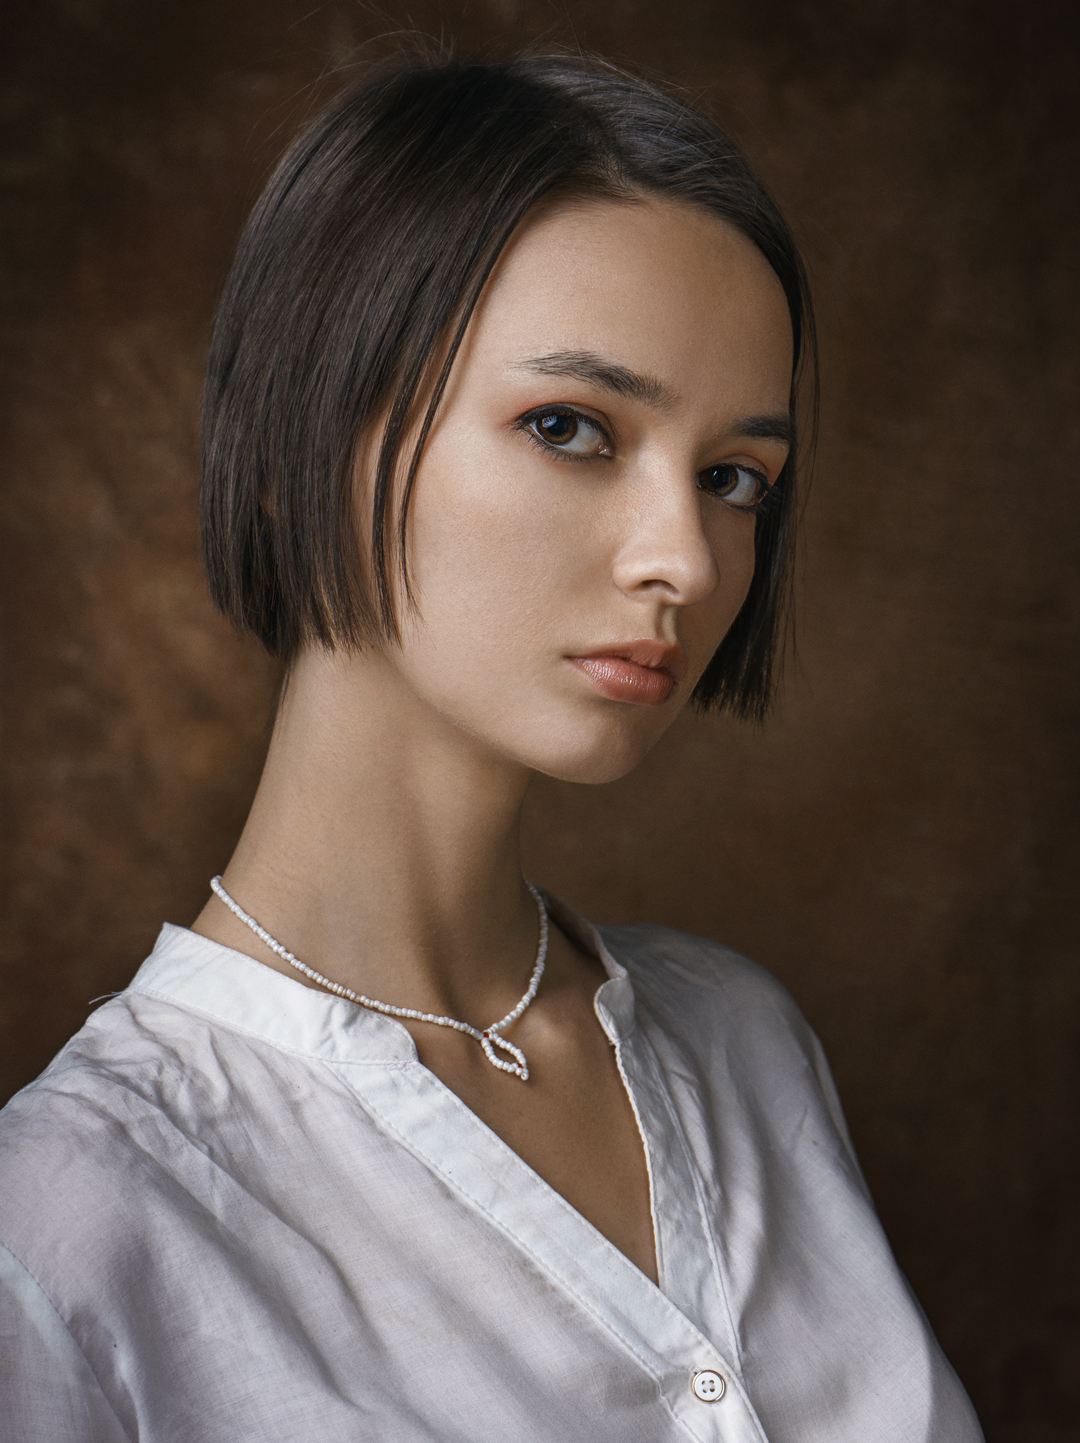 Aleksey Gurylev Women Dark Hair Short Hair Brown Eyes Looking At Viewer White Clothing Simple Backgr 1080x1443